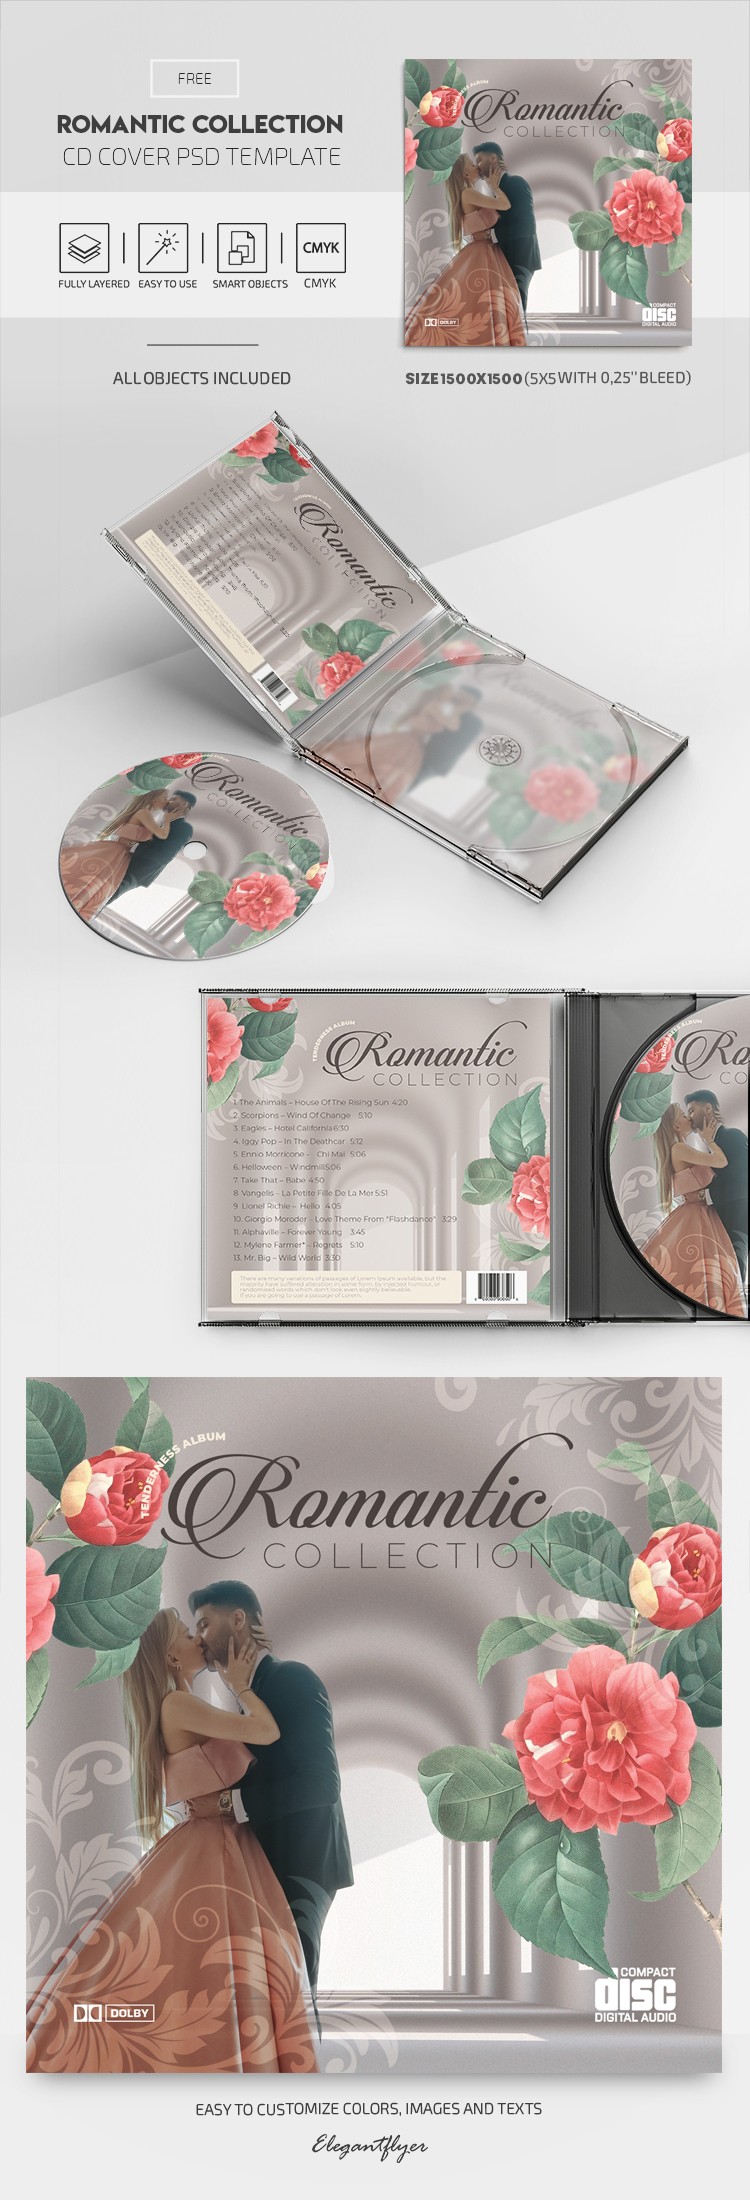 Colección Romántica Portada de CD by ElegantFlyer